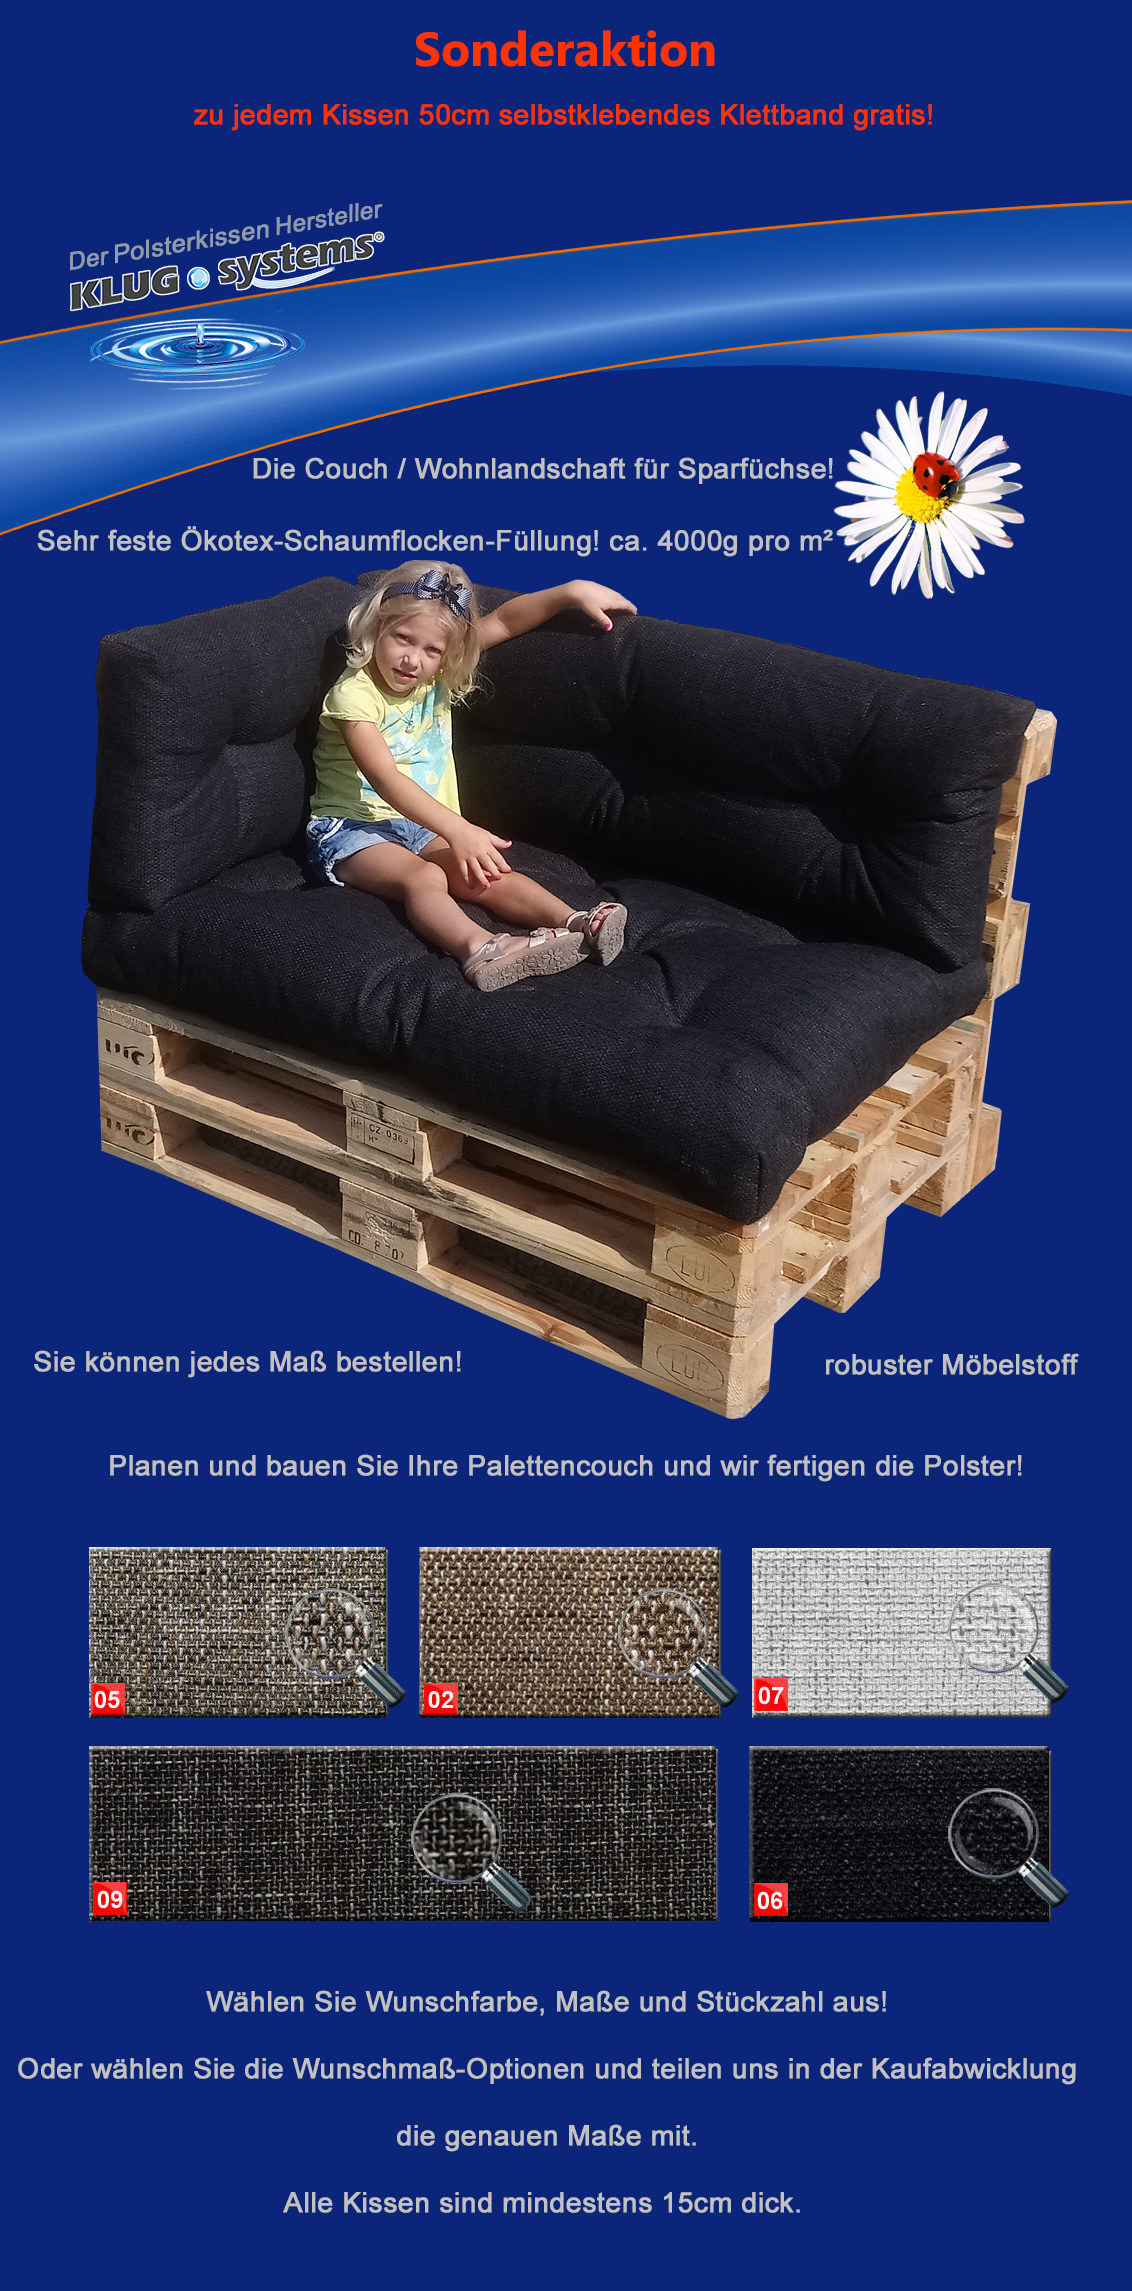 Details Zu Indoor Couch Gesteppt Polster Lounge 50cm Klettband Pro Kissen Fur Sparfuchse